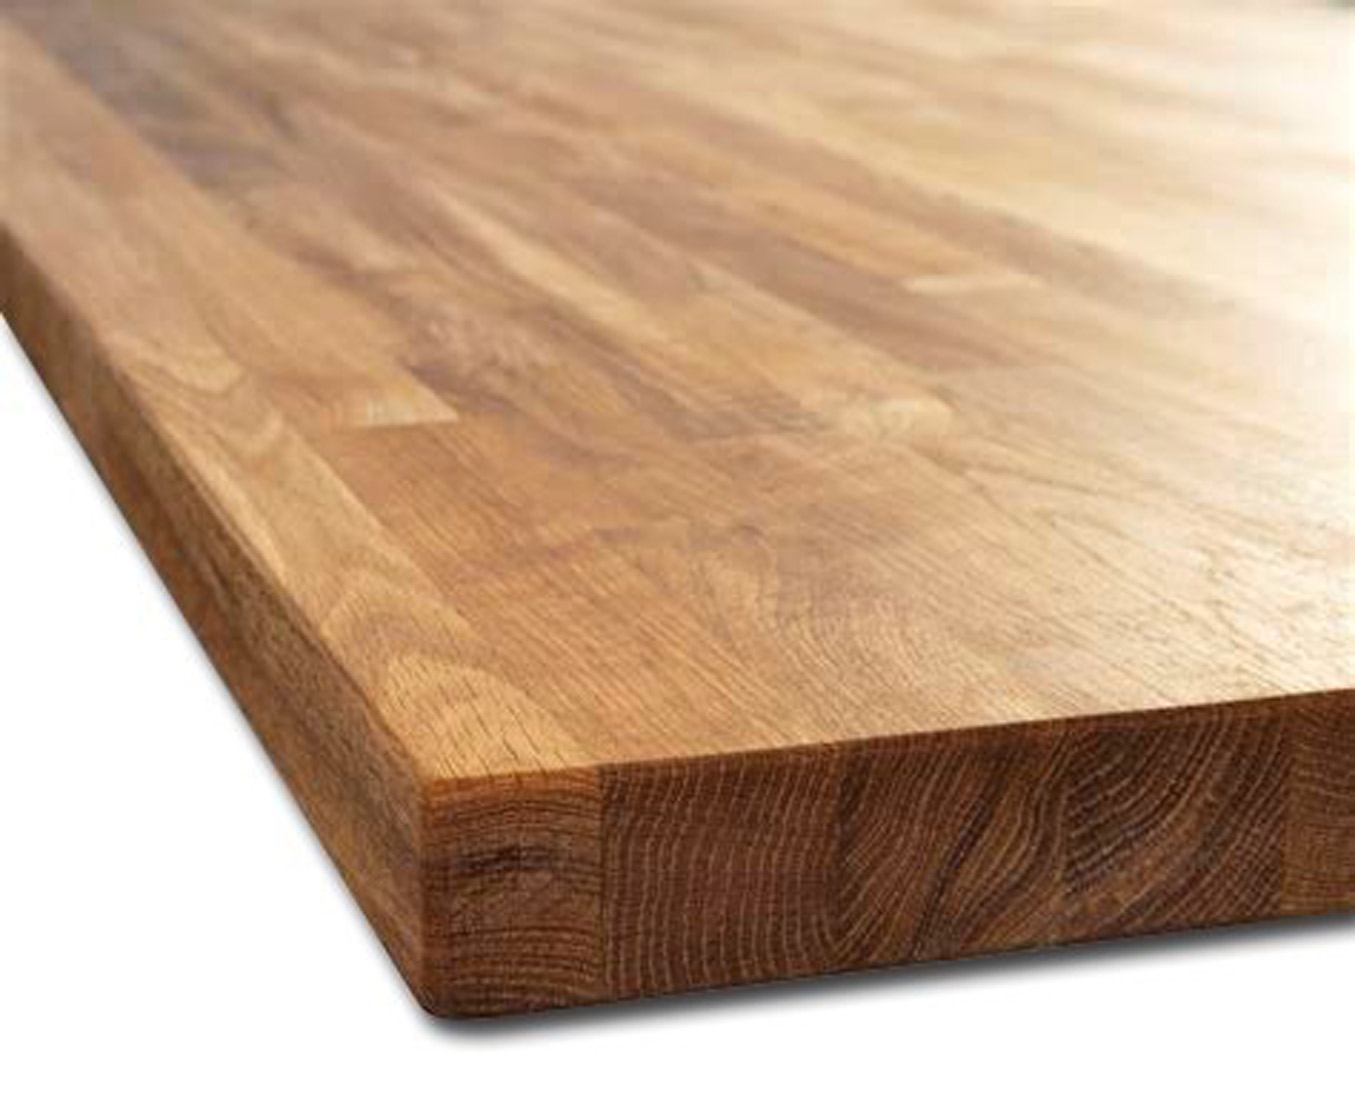 Los sistemas constructivos en tableros de madera, tipos, características y usos, Estudio b76.